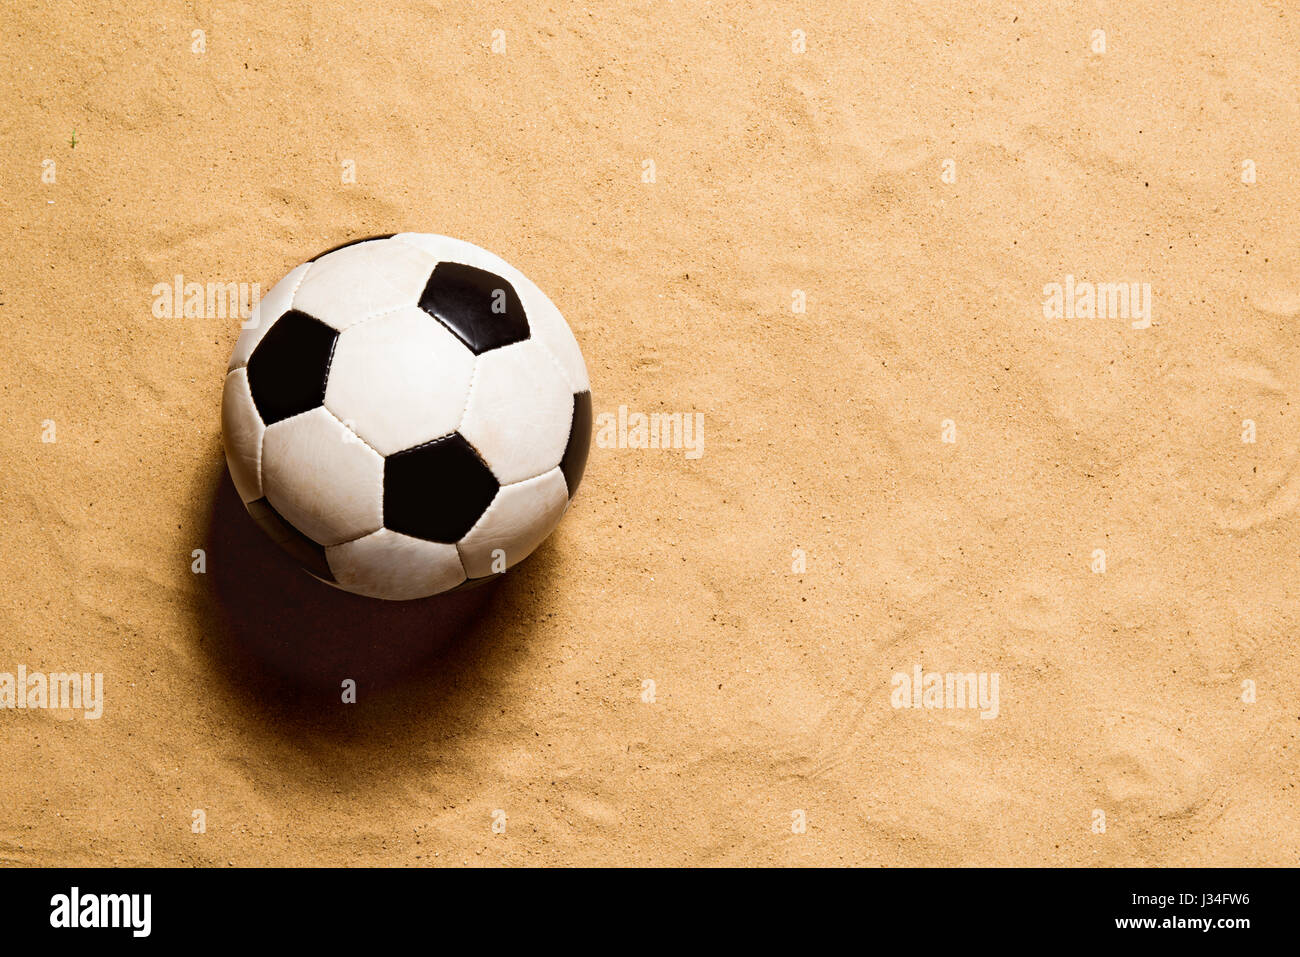 Ballon de football contre une plage de sable. Studio shot. Copier l'espace. Banque D'Images